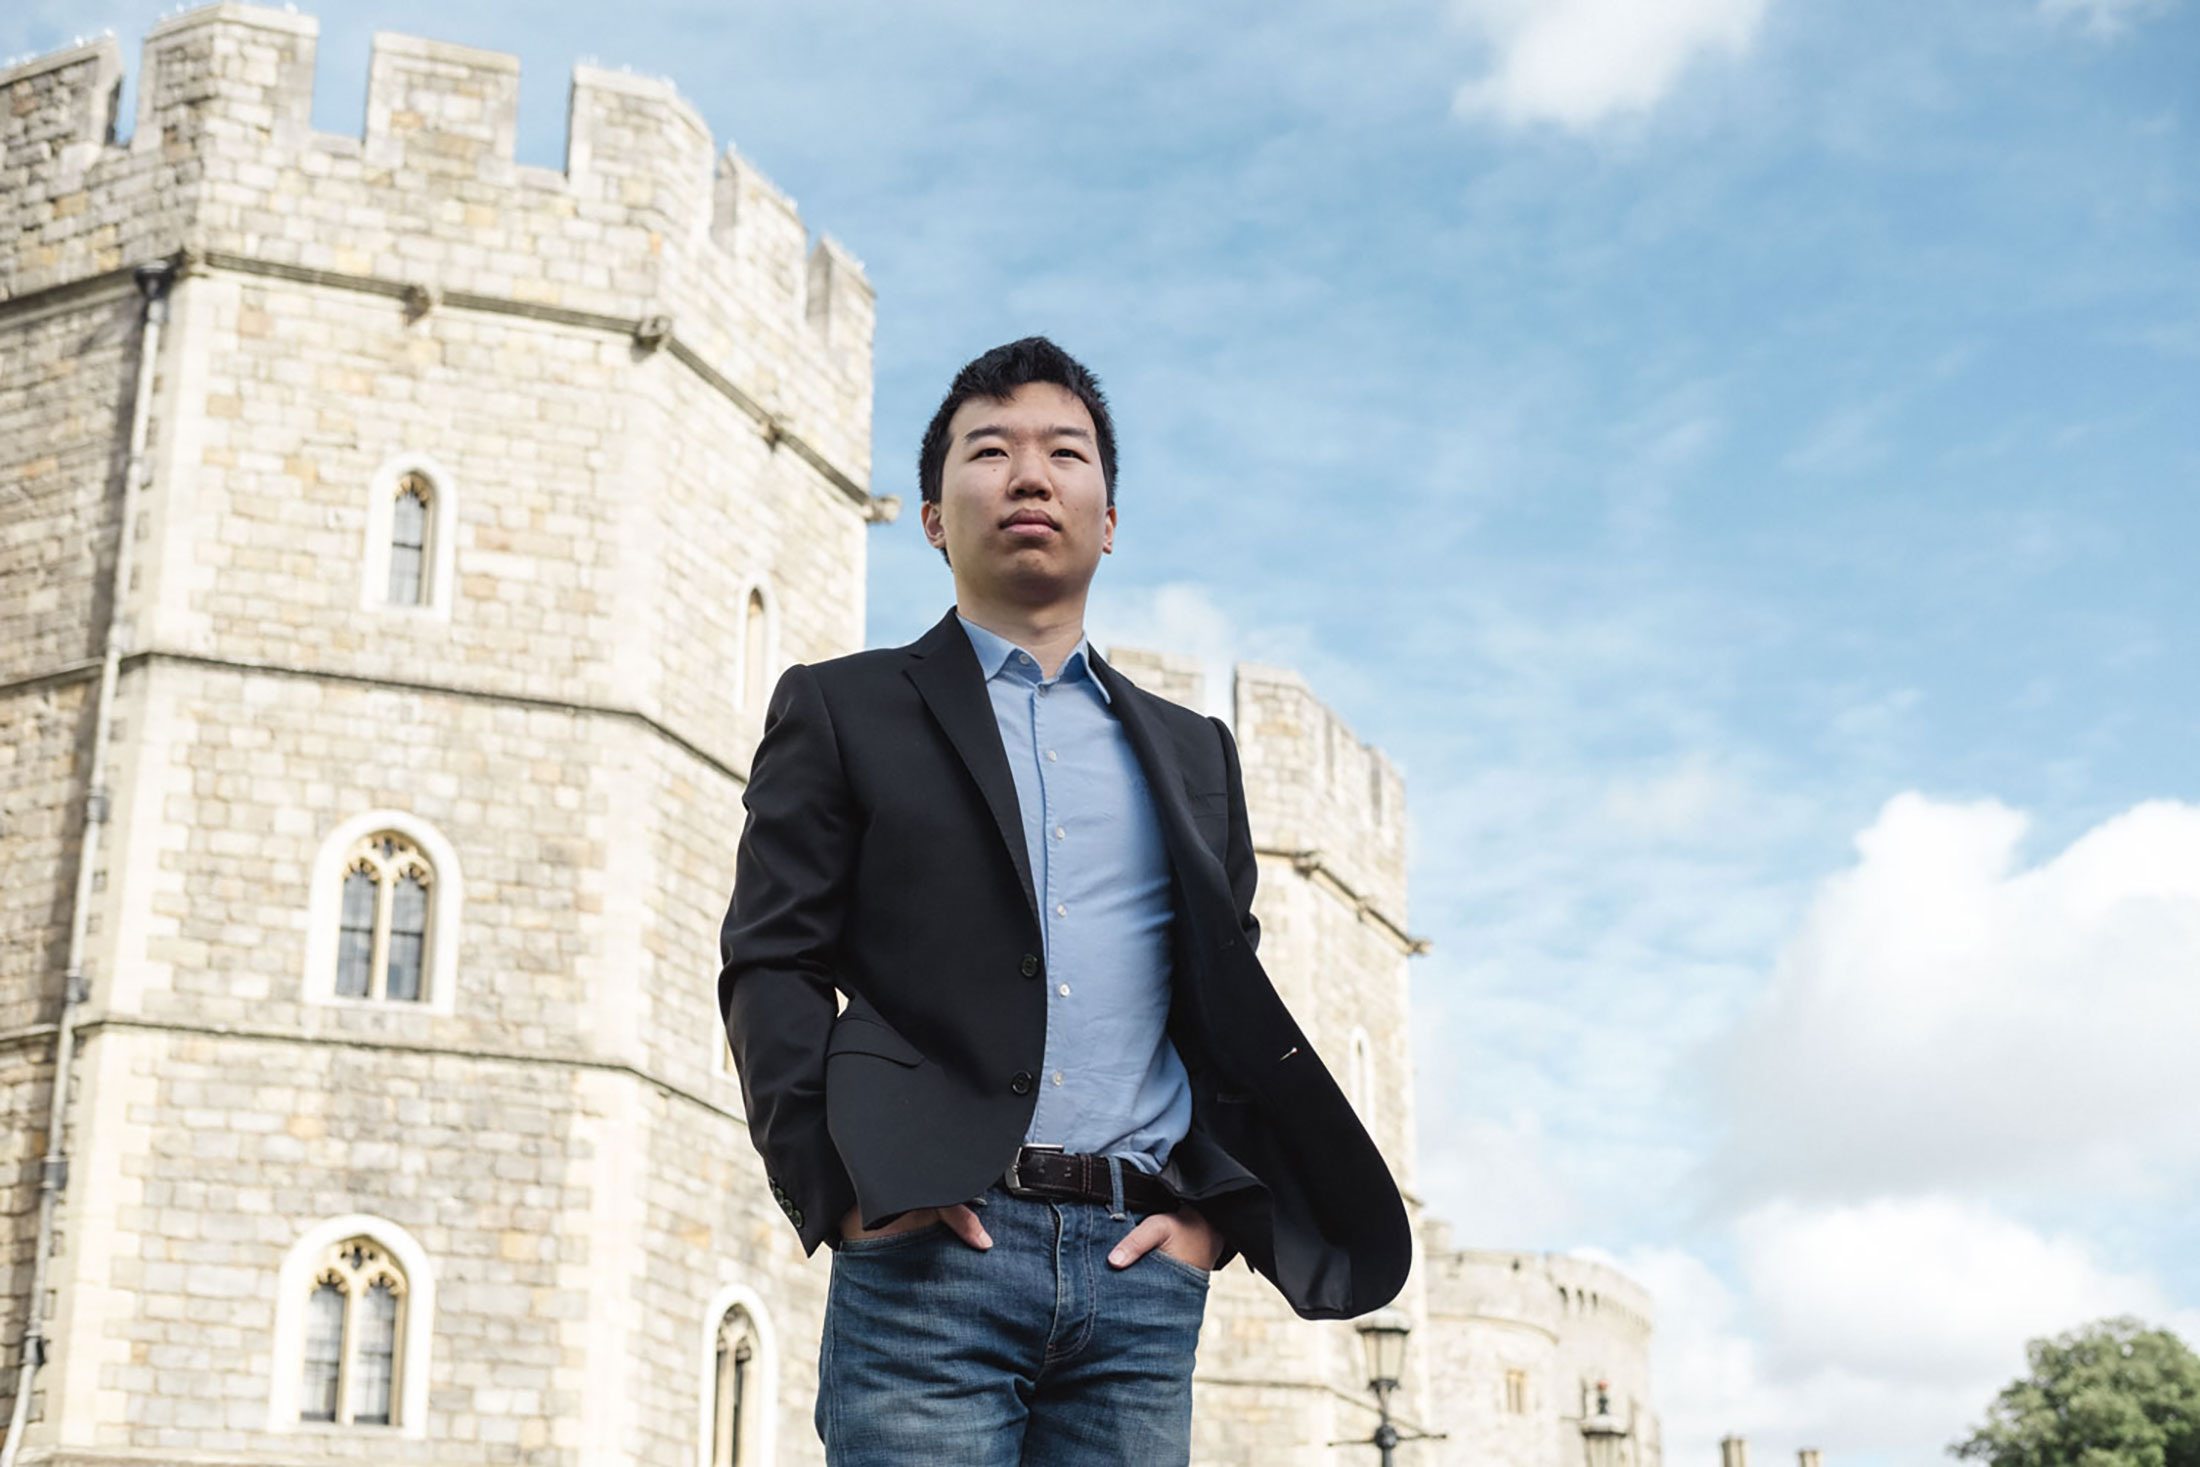 Yoyo Chang outside Windsor Castle